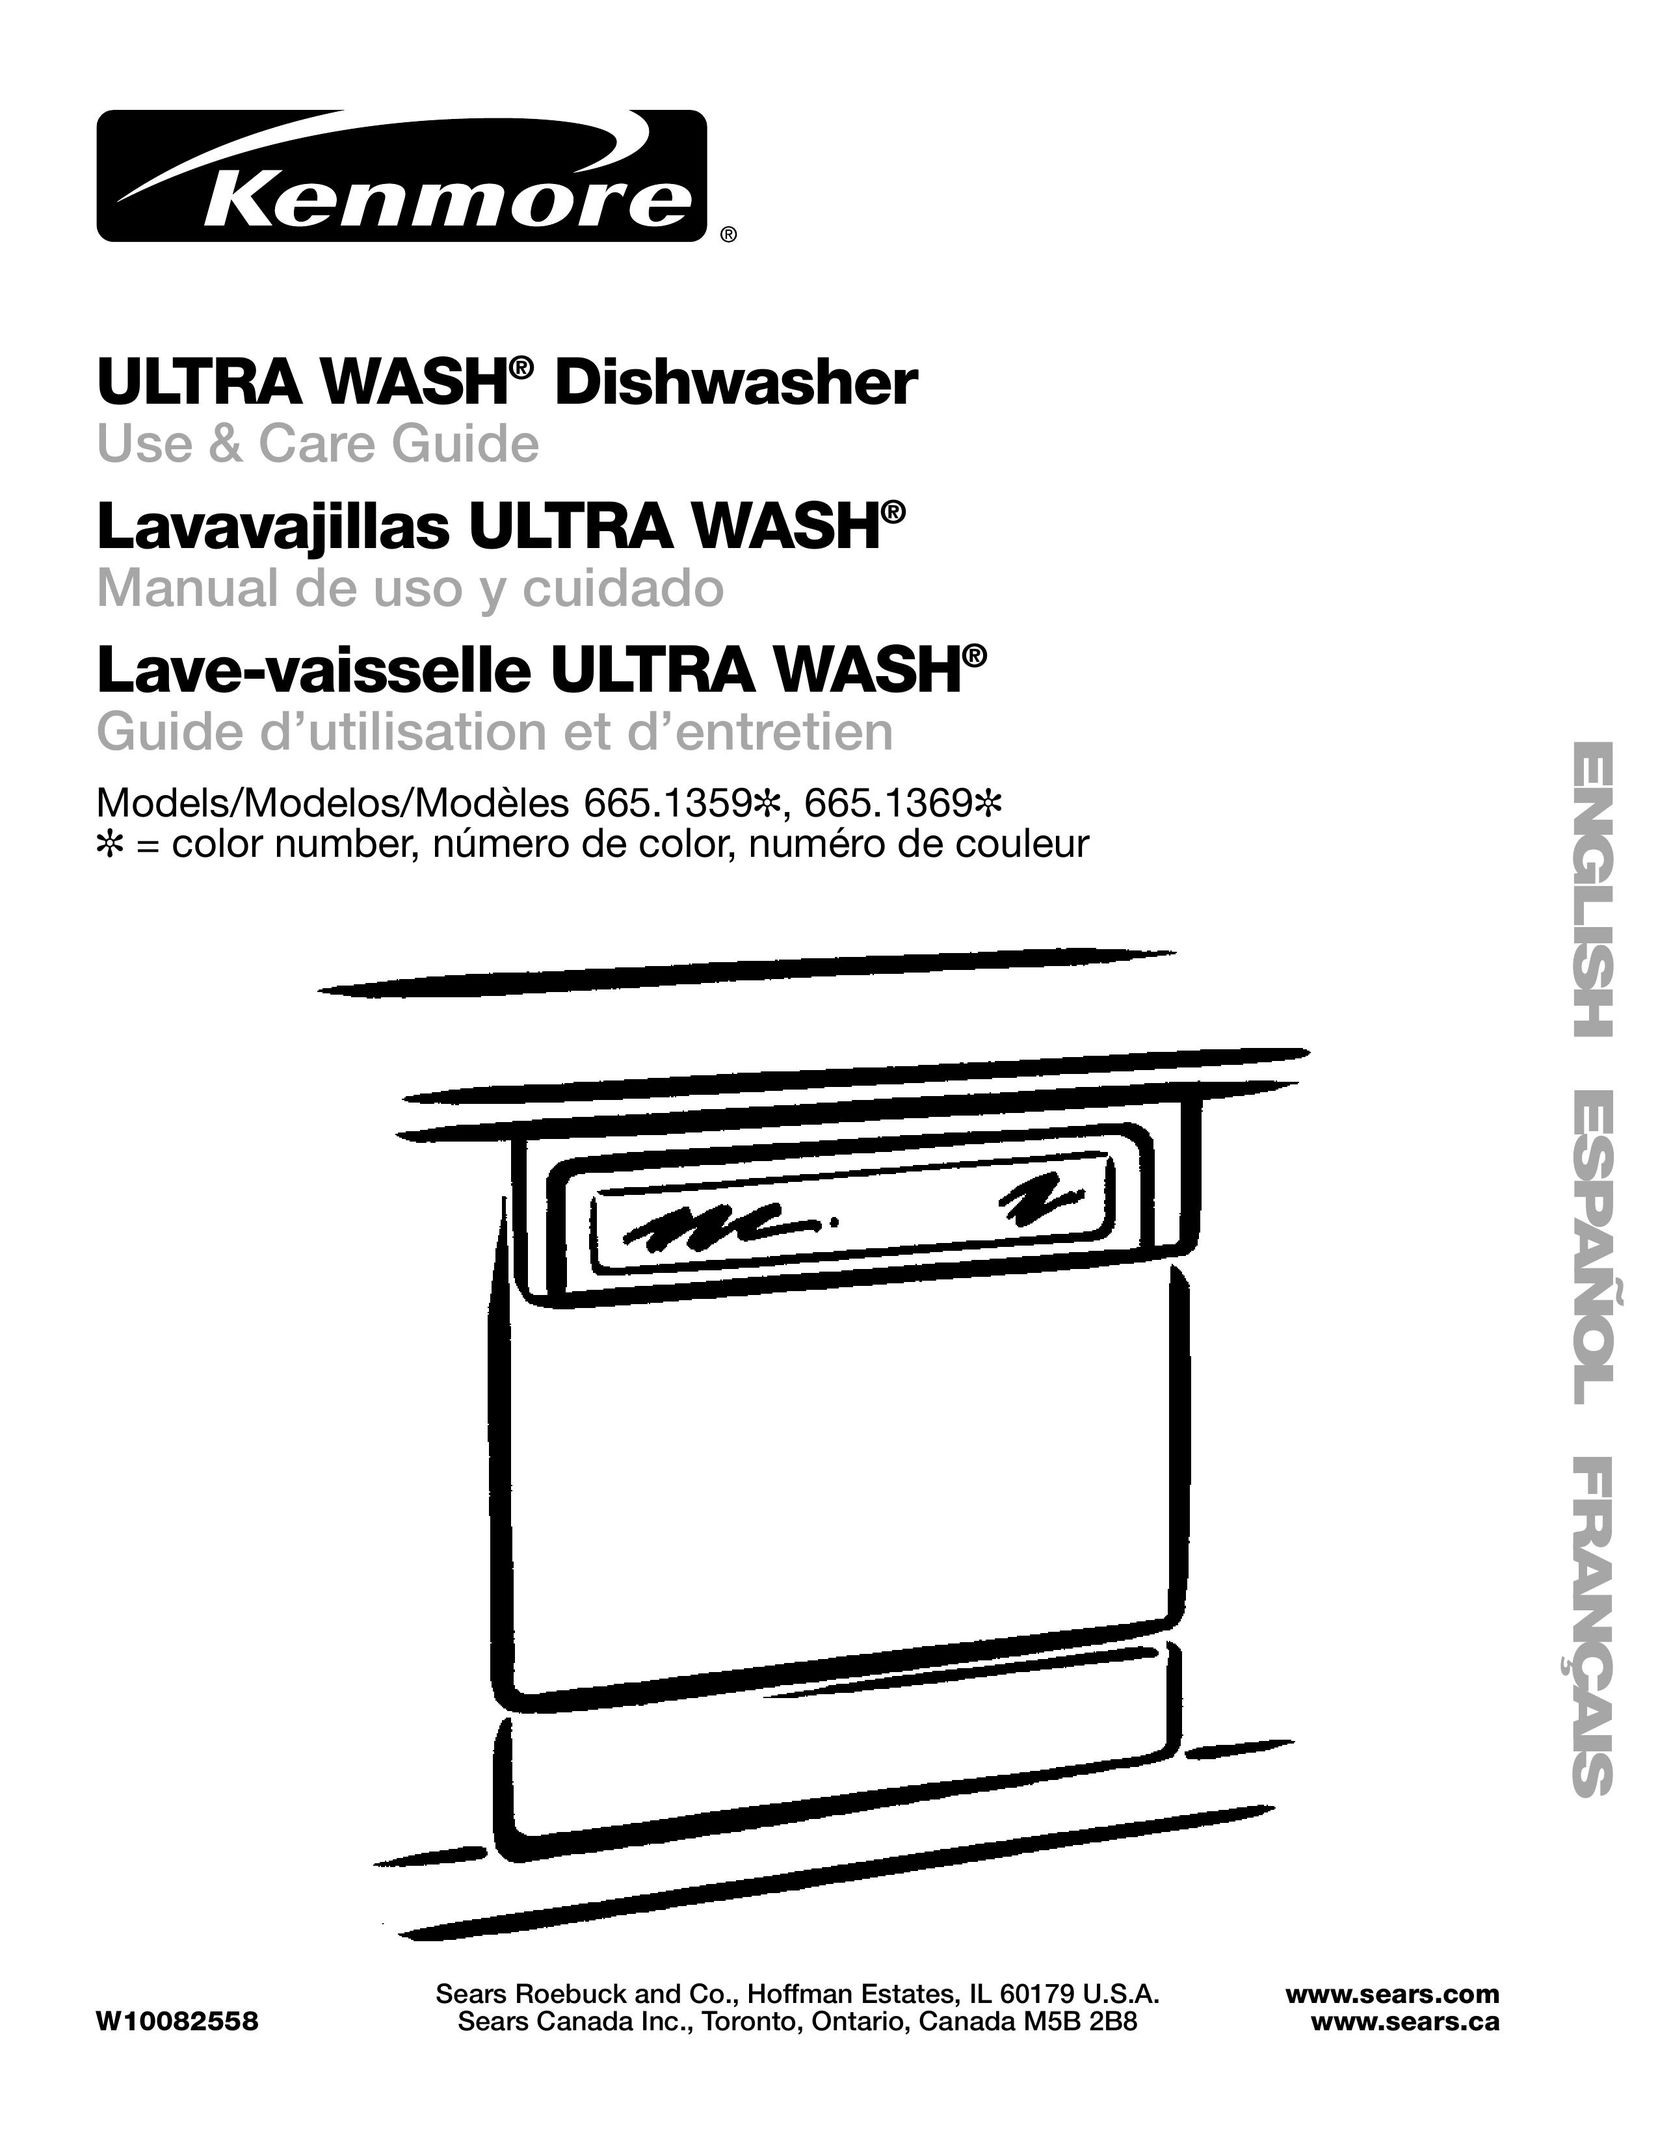 Sears 665.1359 Dishwasher User Manual